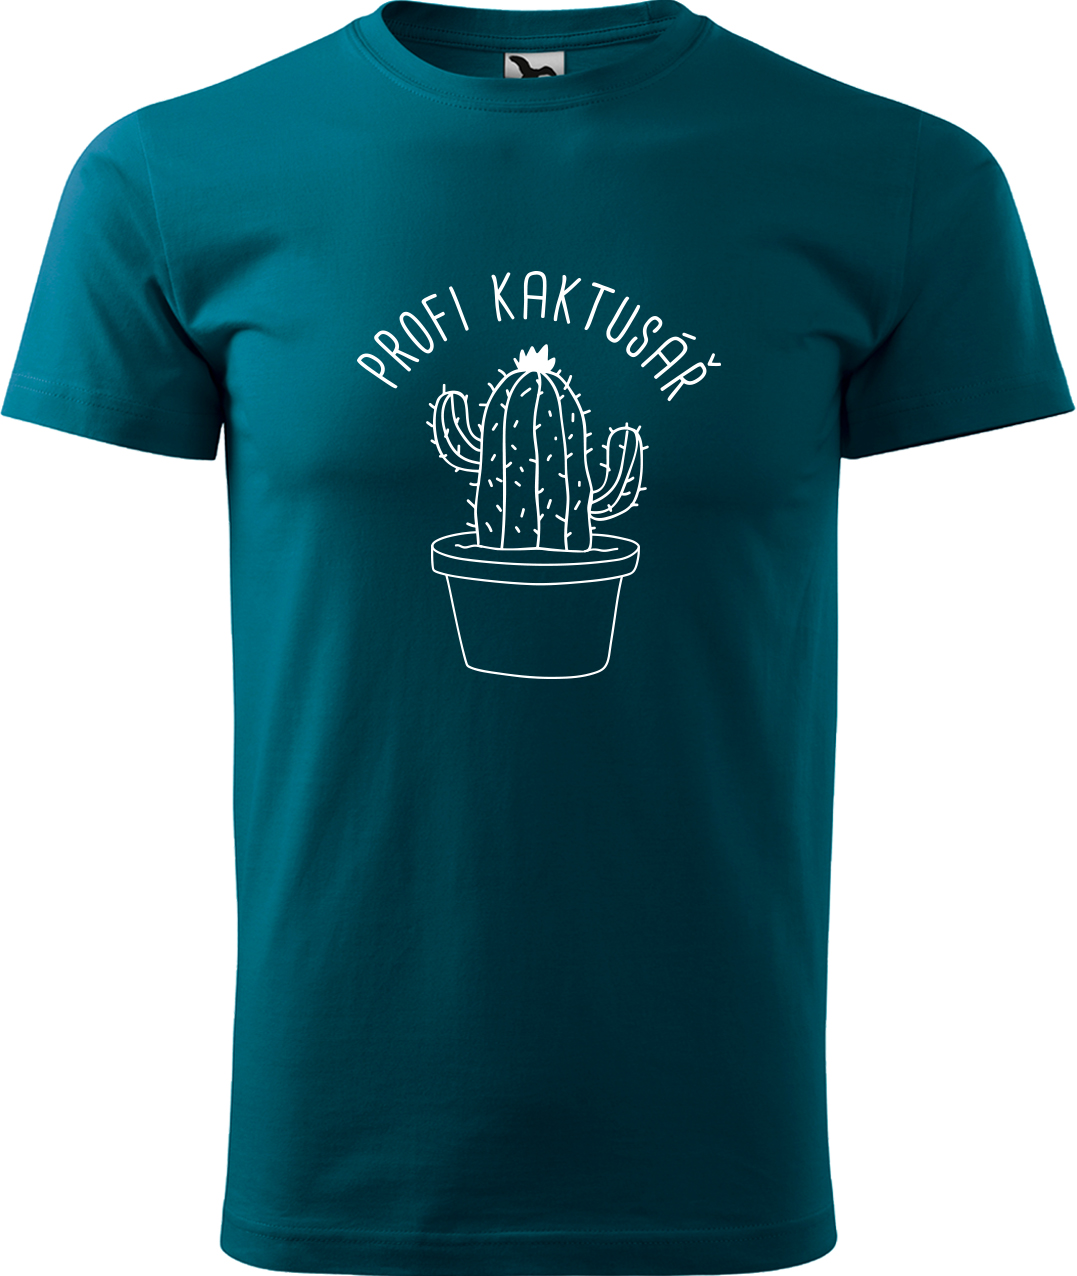 Tričko pro zahradníka - Profi kaktusář Velikost: XL, Barva: Petrolejová (93), Střih: pánský